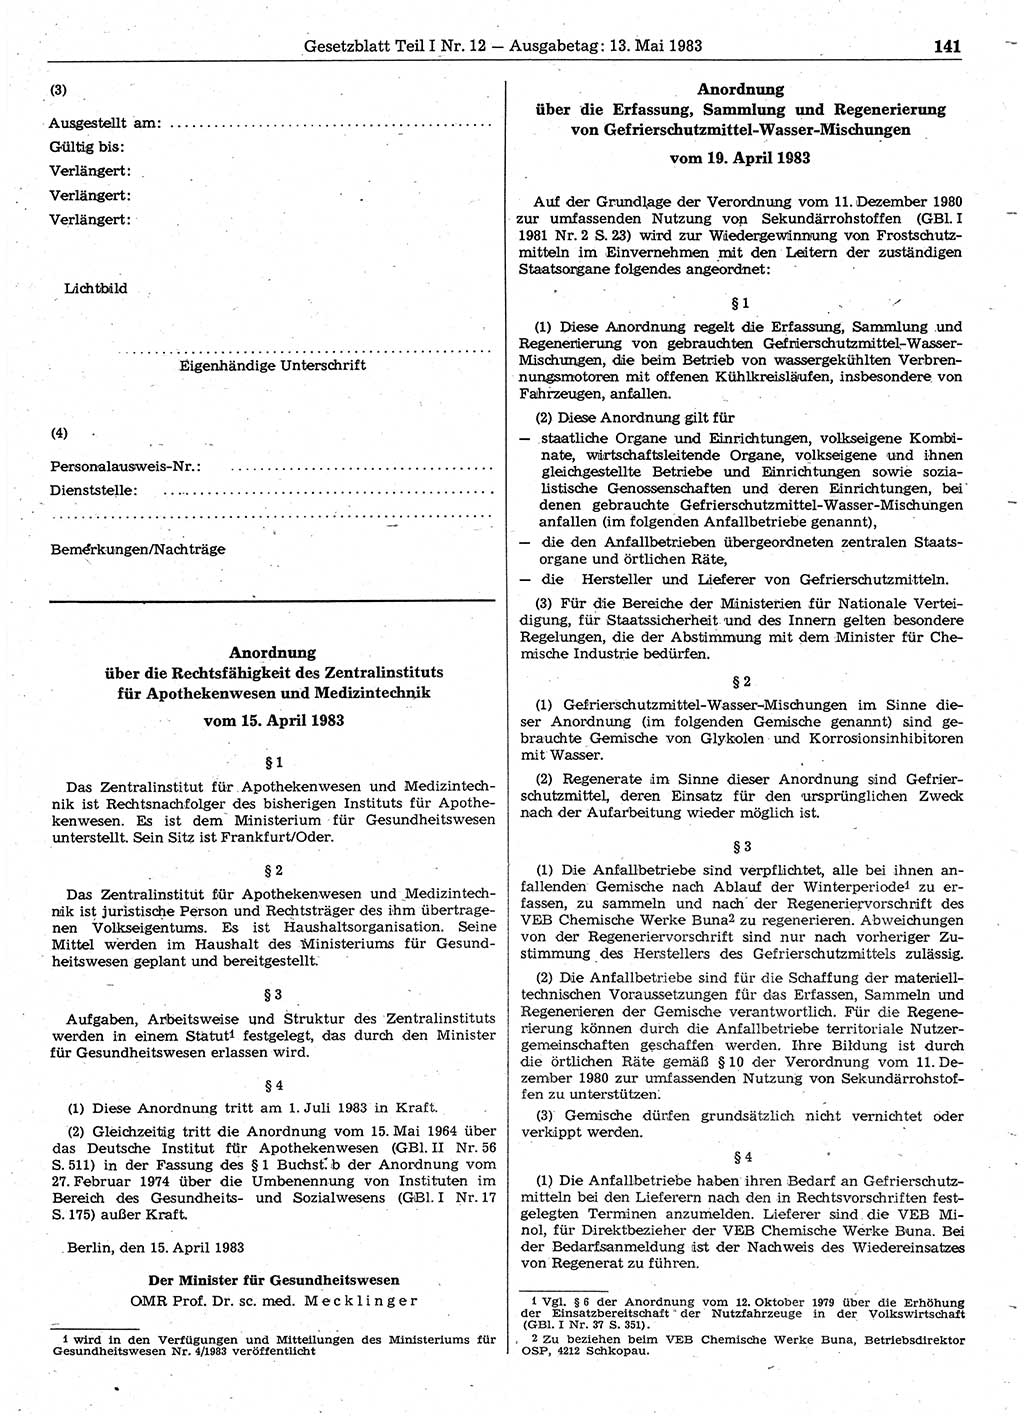 Gesetzblatt (GBl.) der Deutschen Demokratischen Republik (DDR) Teil Ⅰ 1983, Seite 141 (GBl. DDR Ⅰ 1983, S. 141)